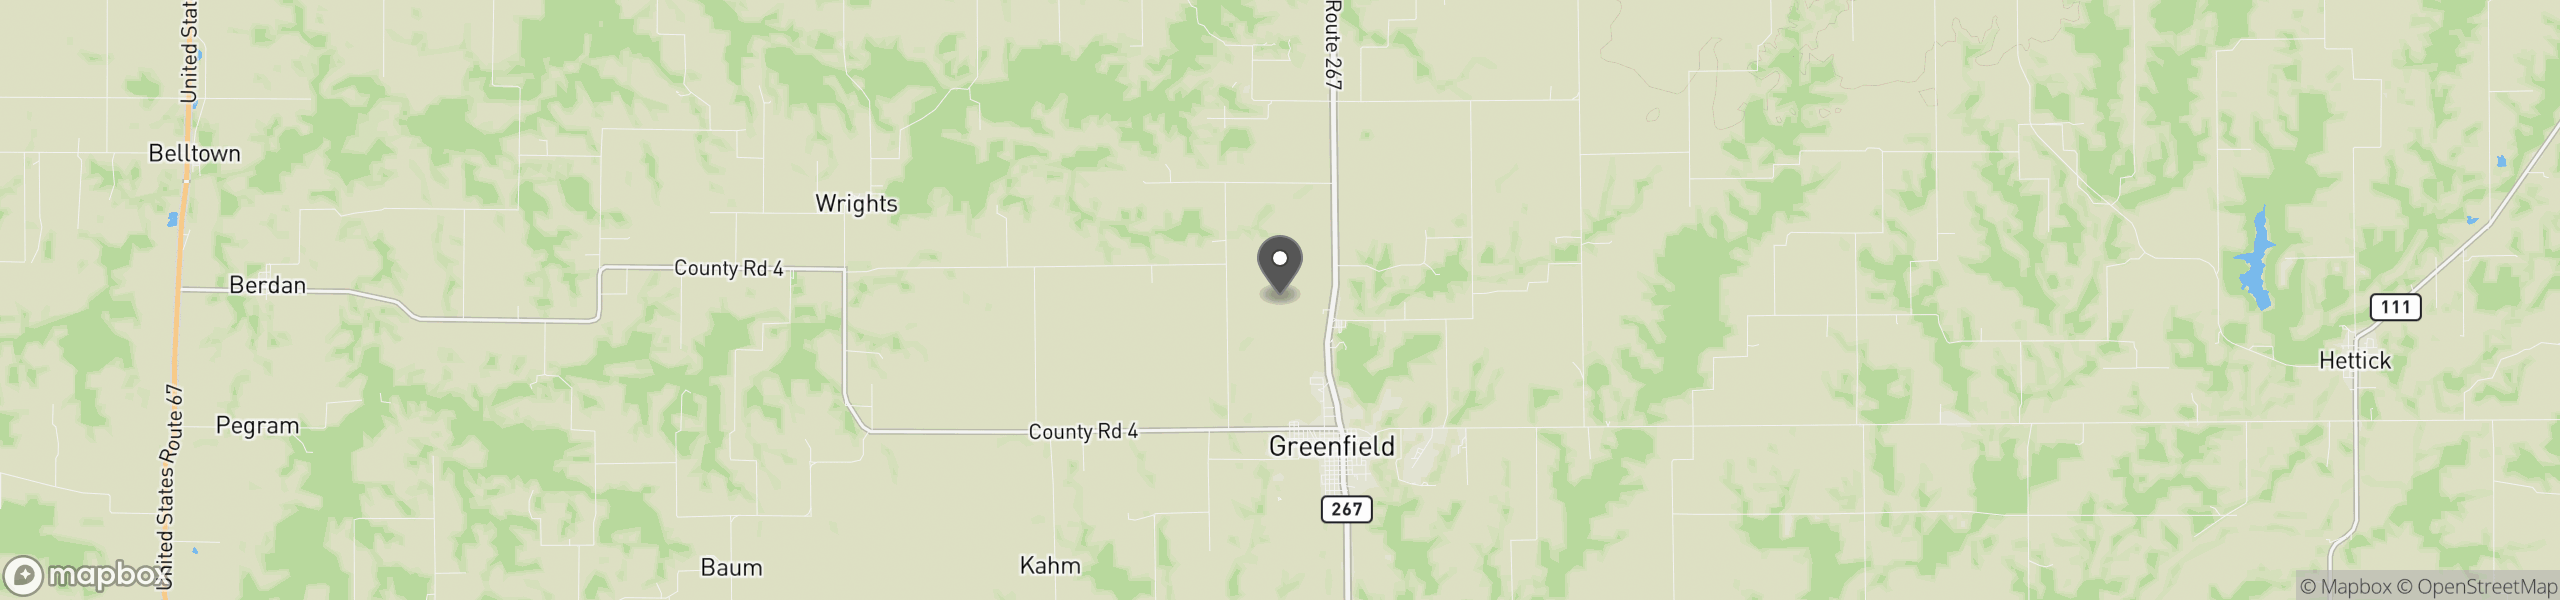 Greenfield, IL 62044